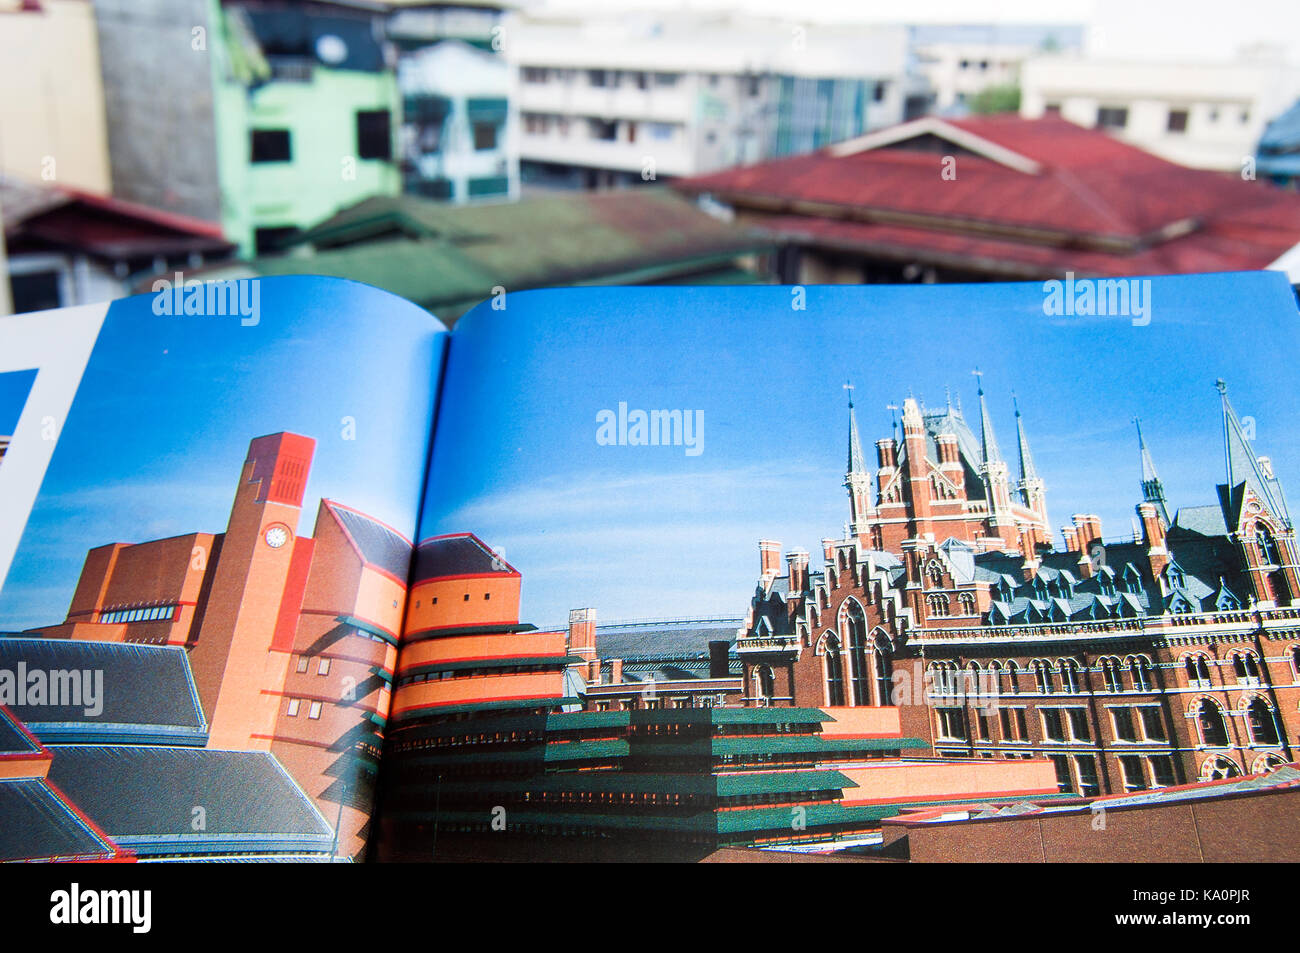 Tiro al coperto all'aperto con sullo sfondo di un caffè aperto tabella libro su architettura di Londra Foto Stock